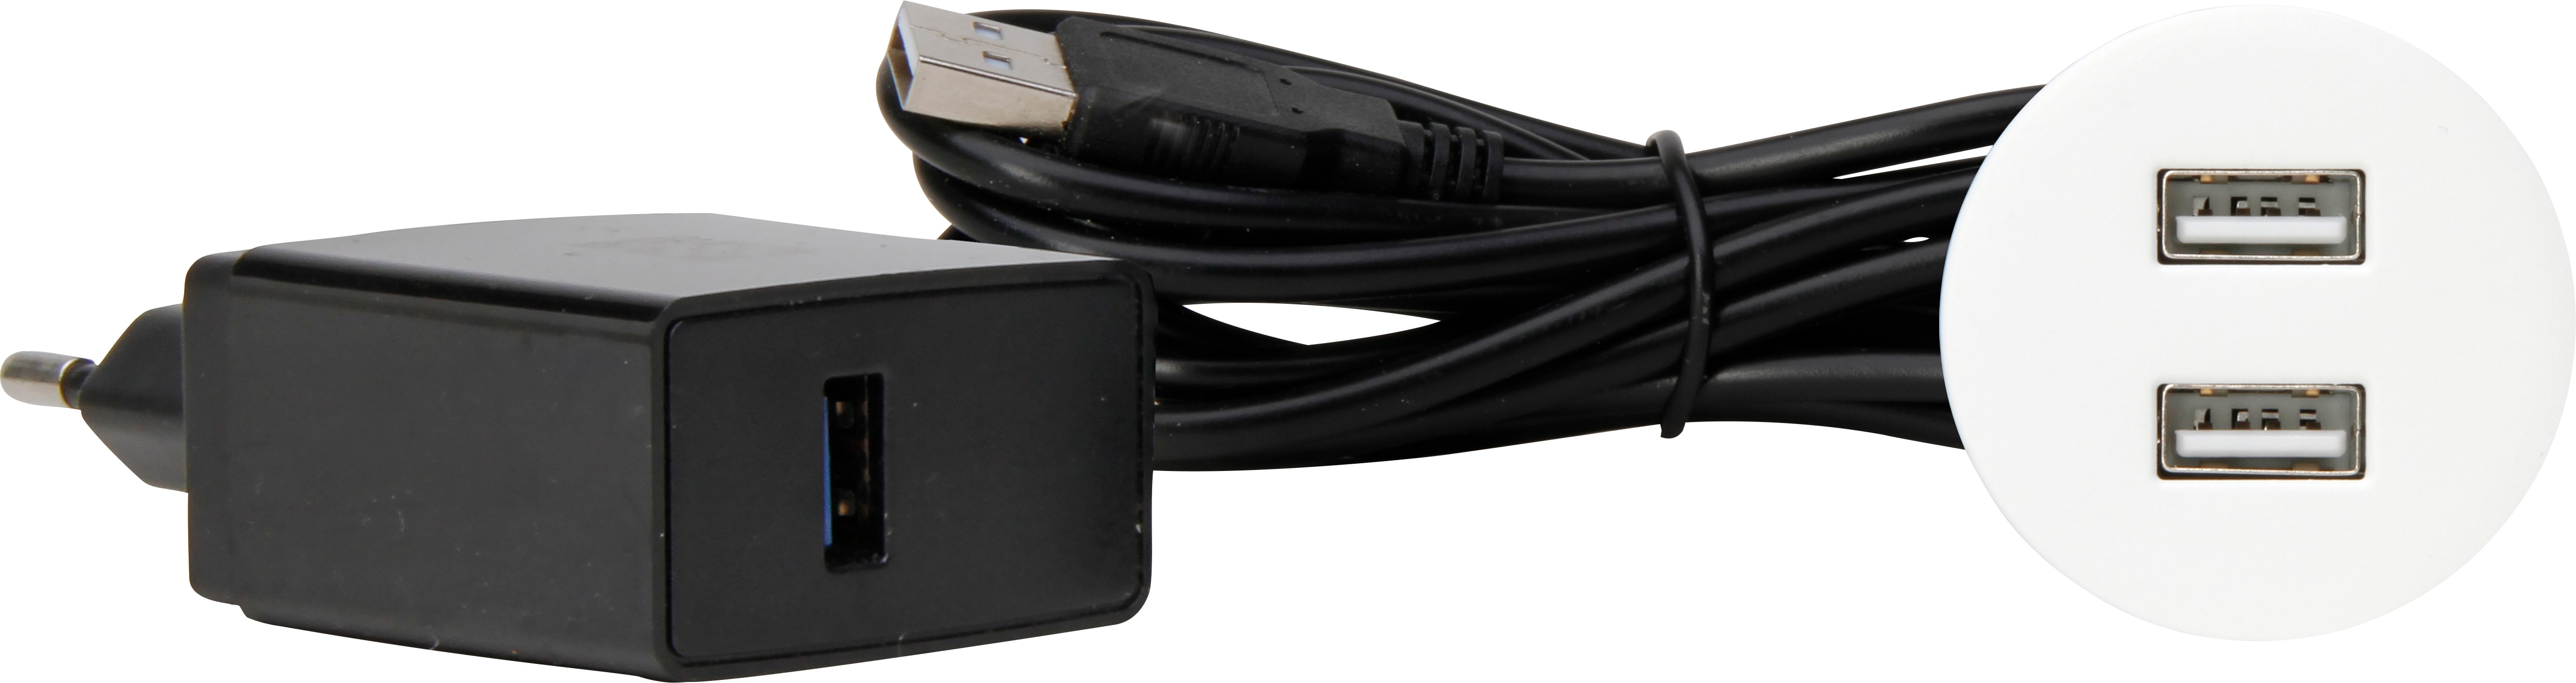 Kopp 939741014 VersaPICK USB Einbauset mit 2x USB, rund, Metall, weiß